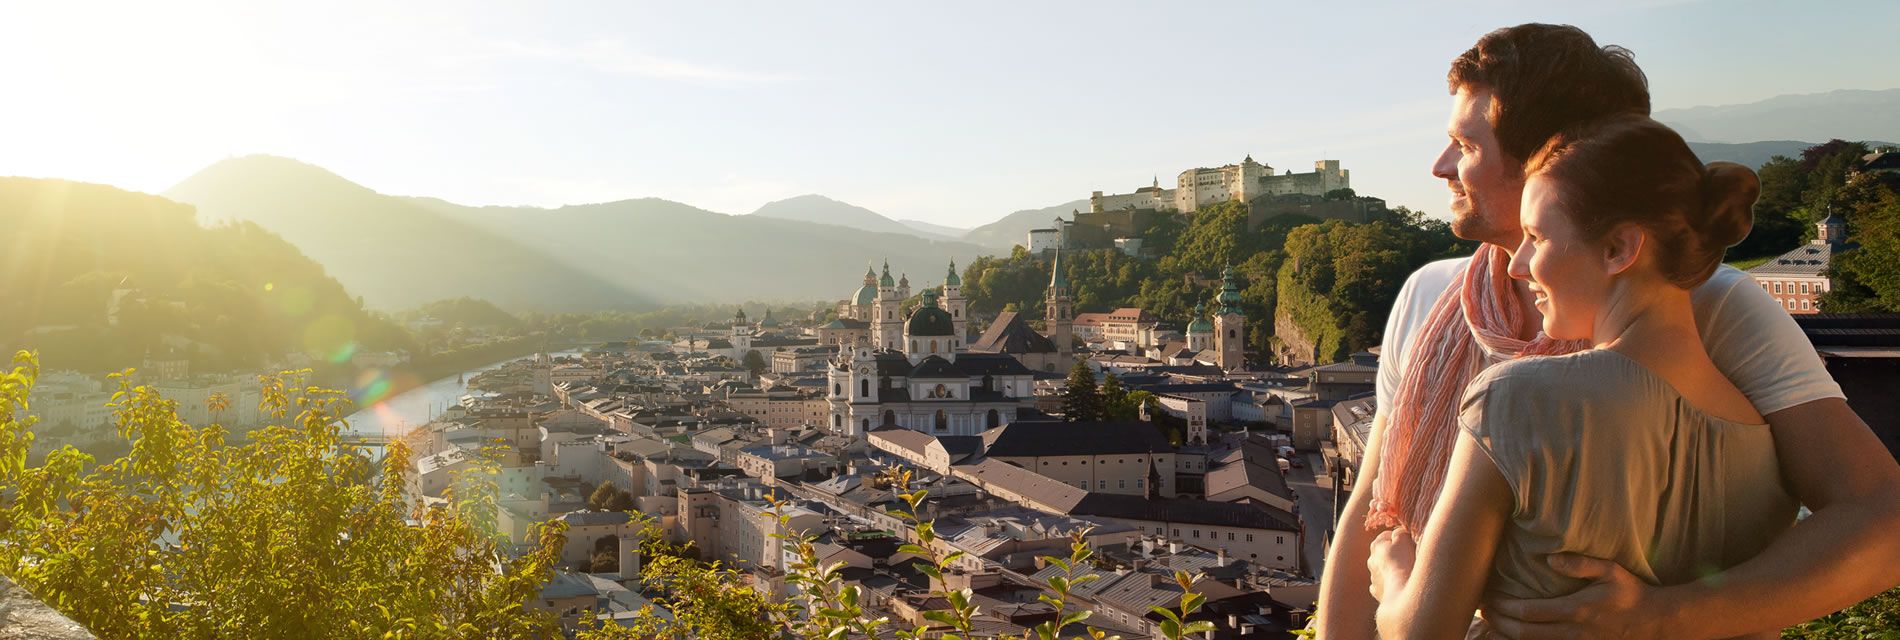 Besuchen Sie die nahe gelegene Festspielstadt Salzburg